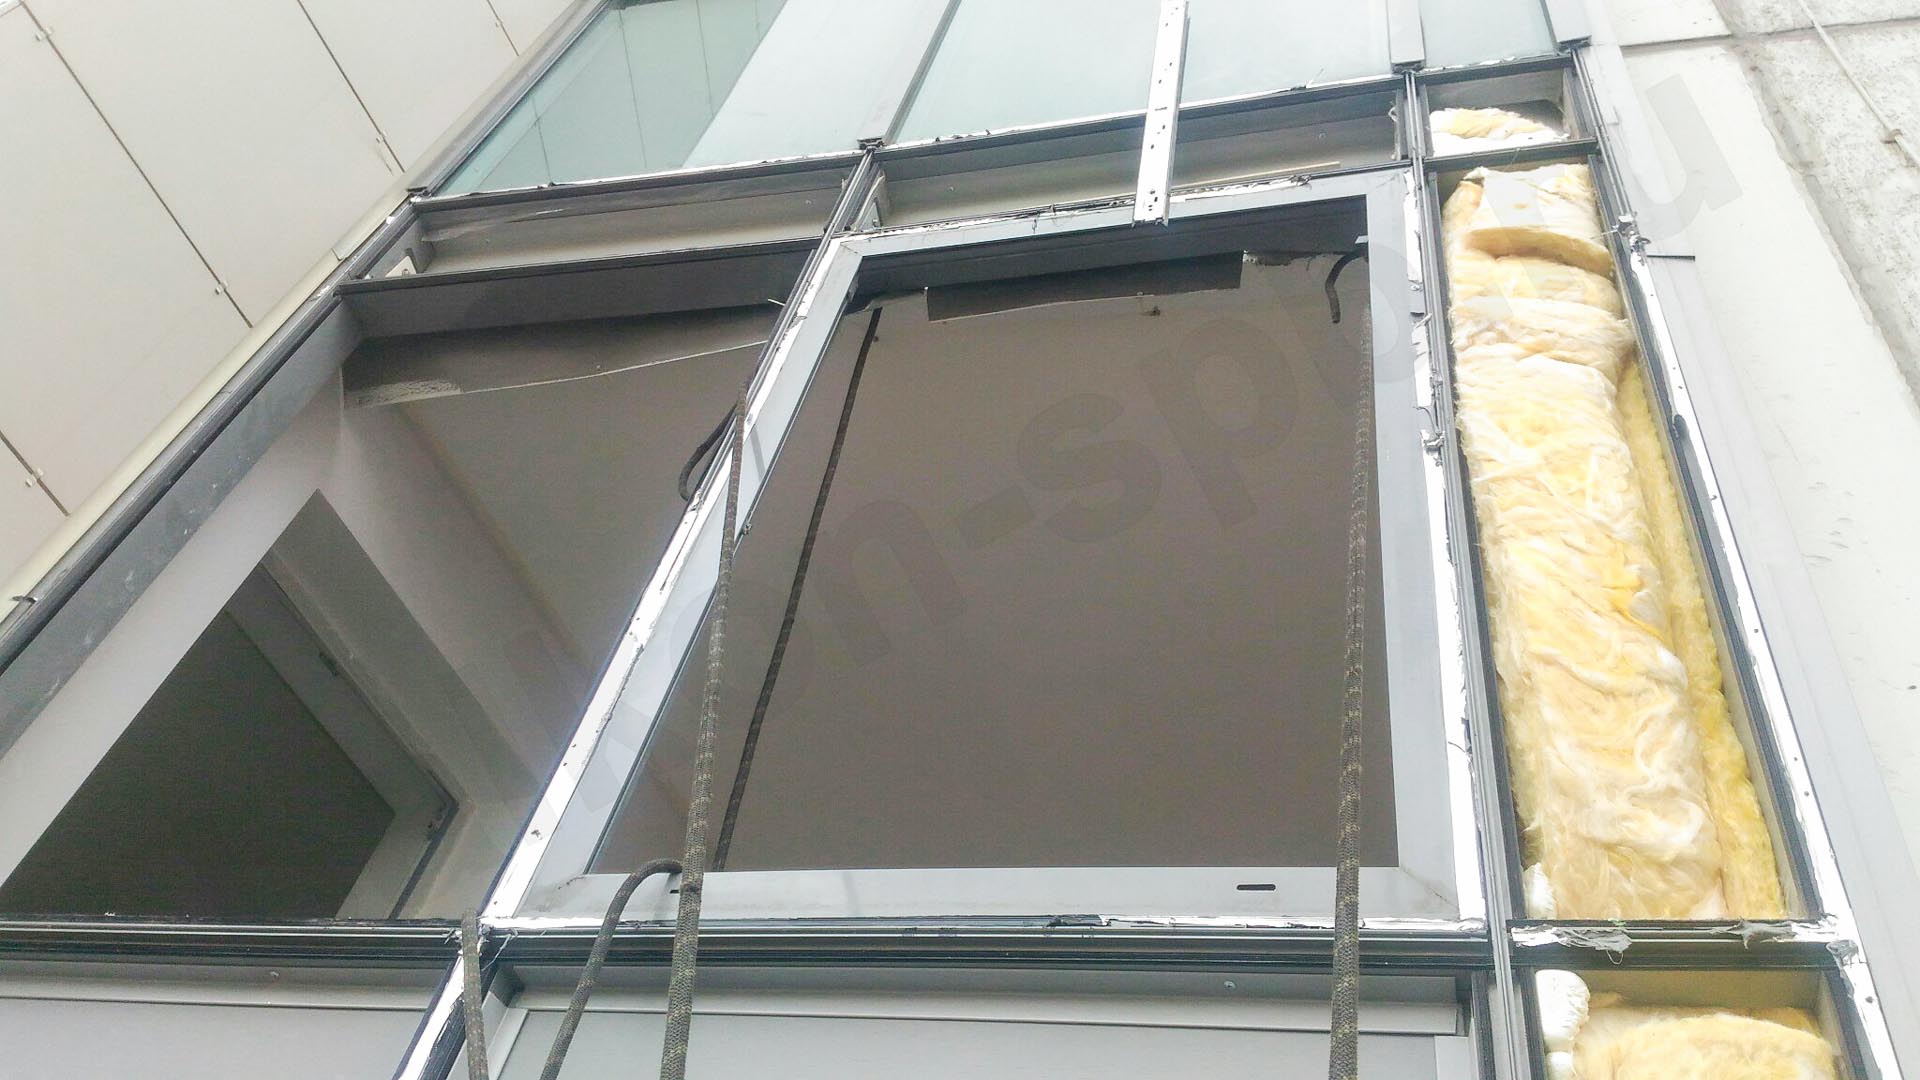 установка пластикового окна в алюминиевый фасад